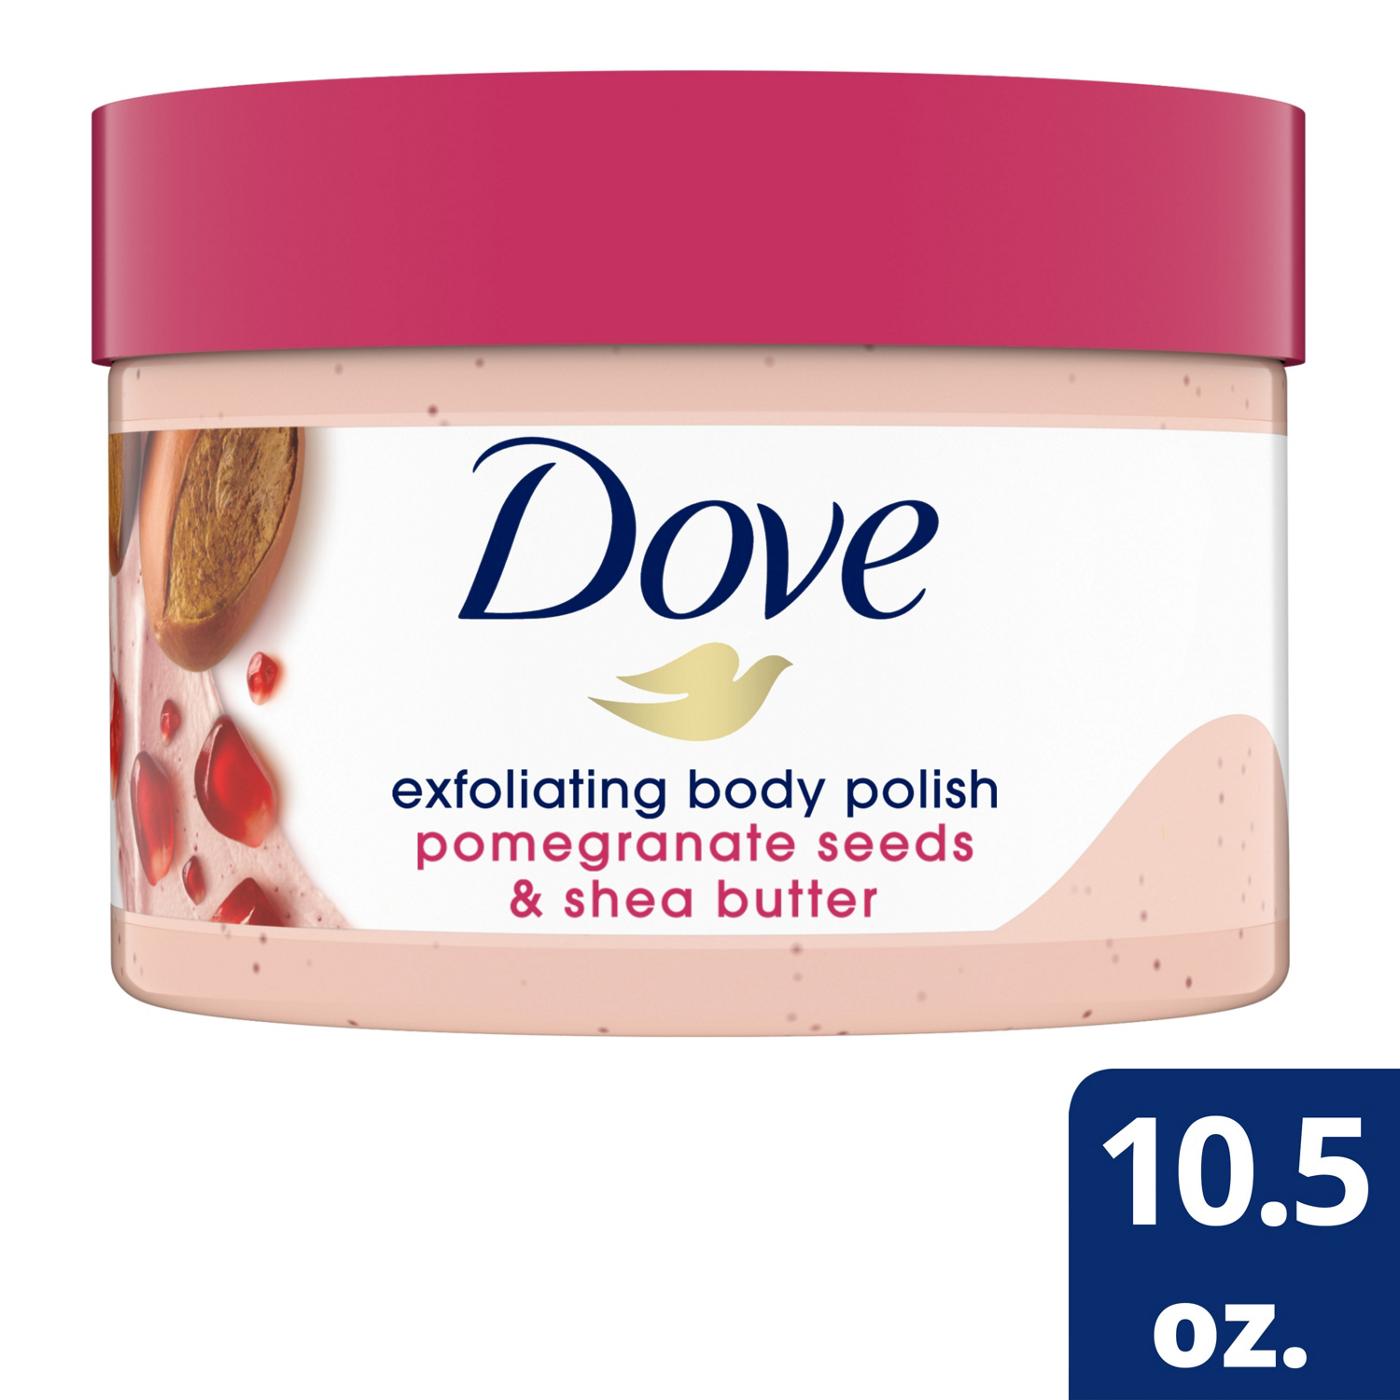 Dove Scrub Pomegranate & Shea Butter; image 3 of 10